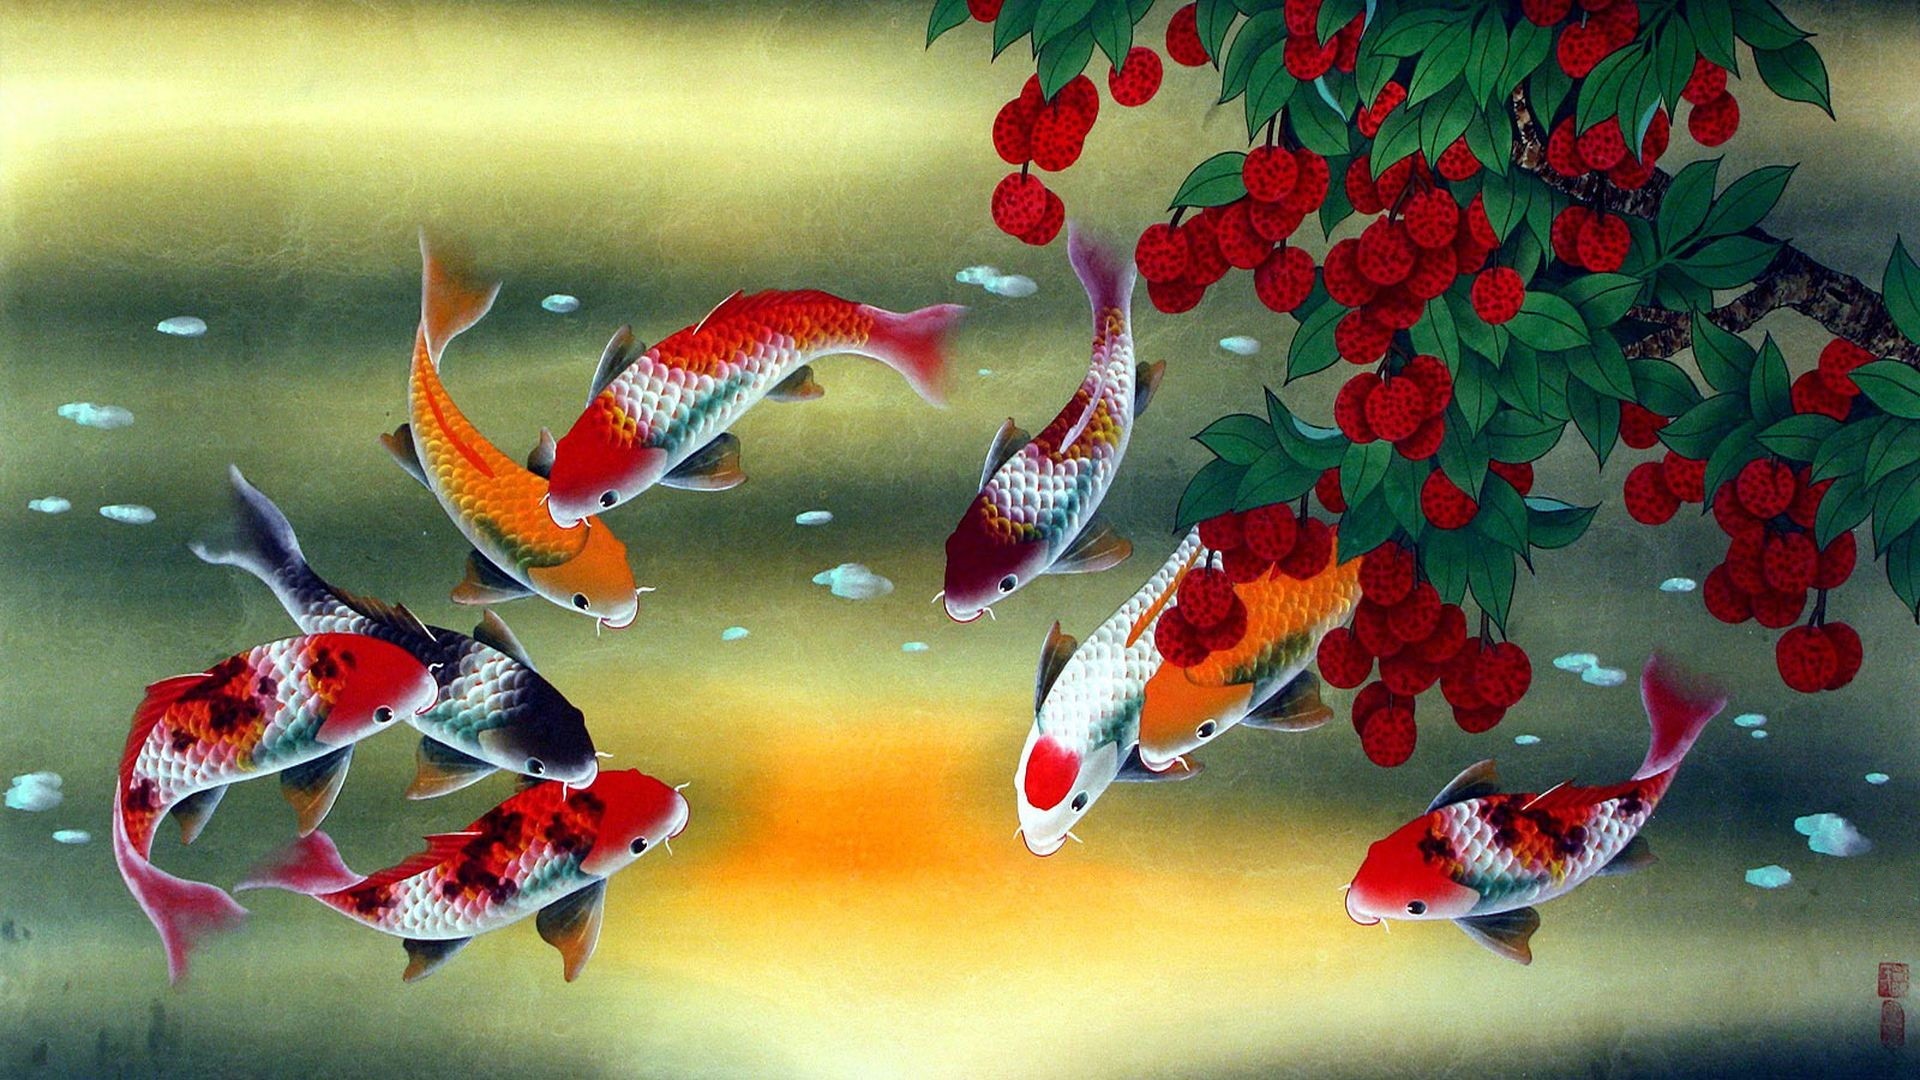 1920x1080 Wallpaper Pack - Fish Paintings (Rare)